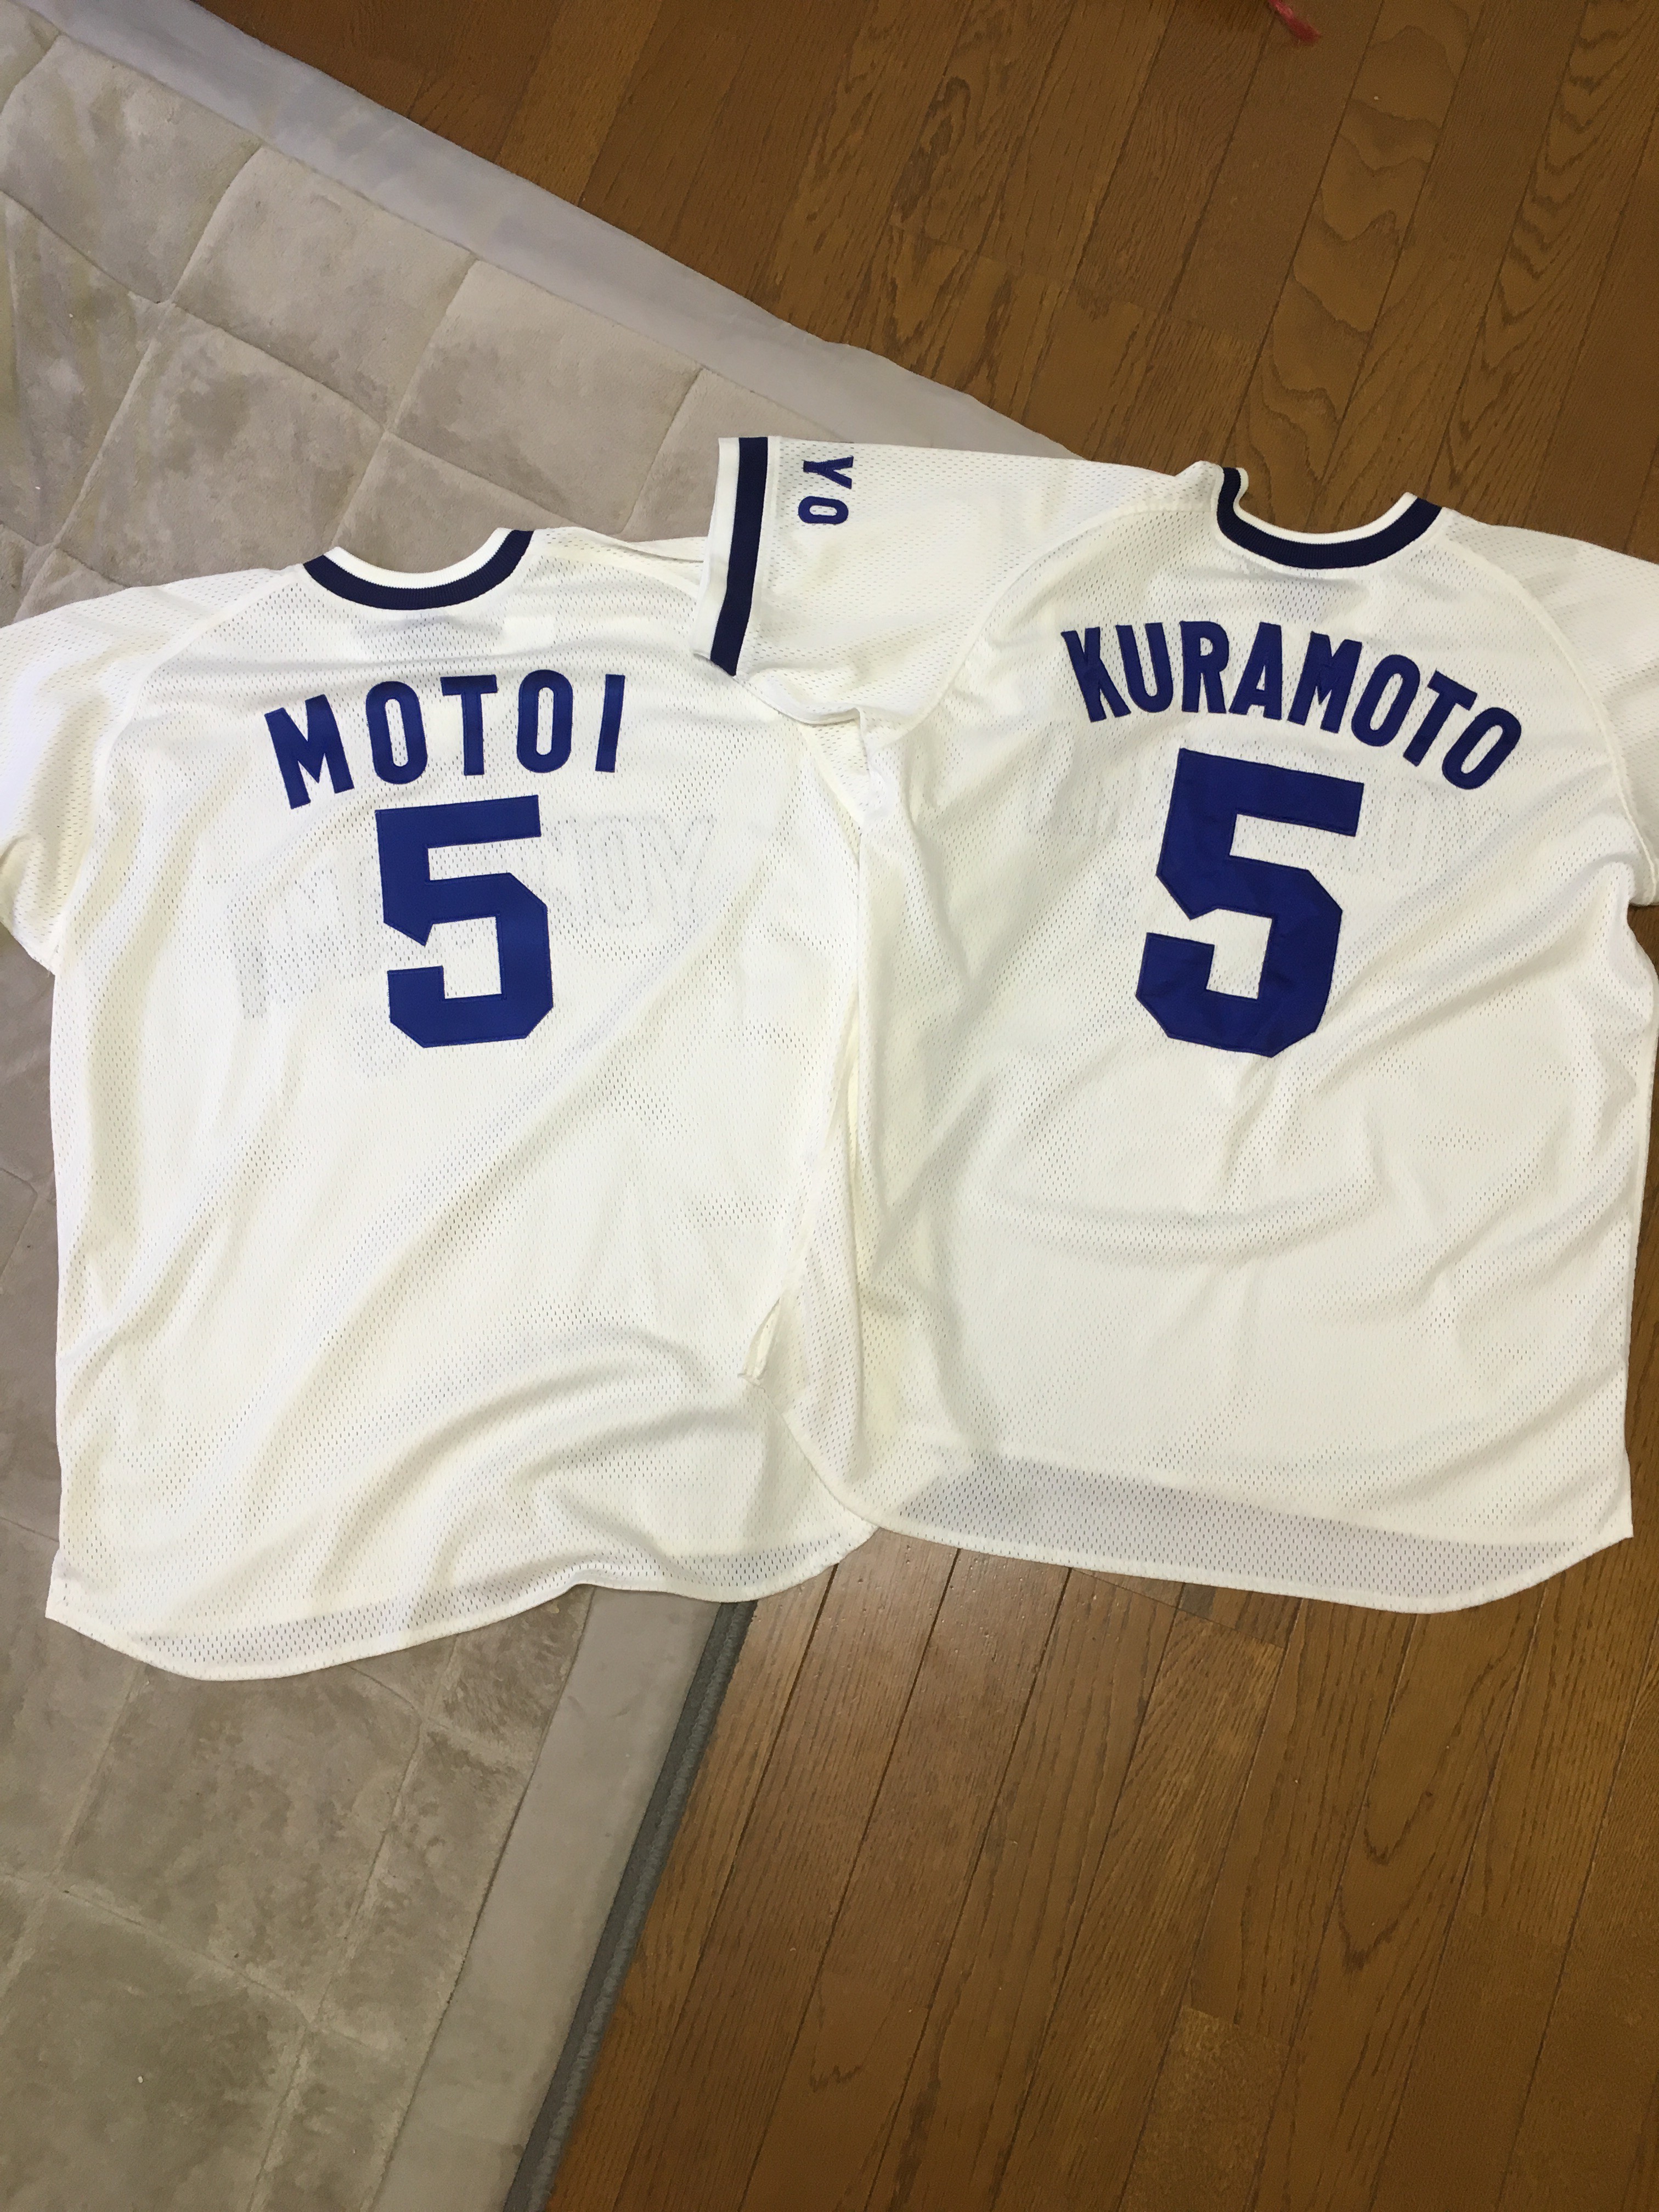 横浜大洋ホエールズ復刻ユニフォームに胸番号と背番号5番を刺繍 – プロ野球応援ユニフォームの真野ししゅう